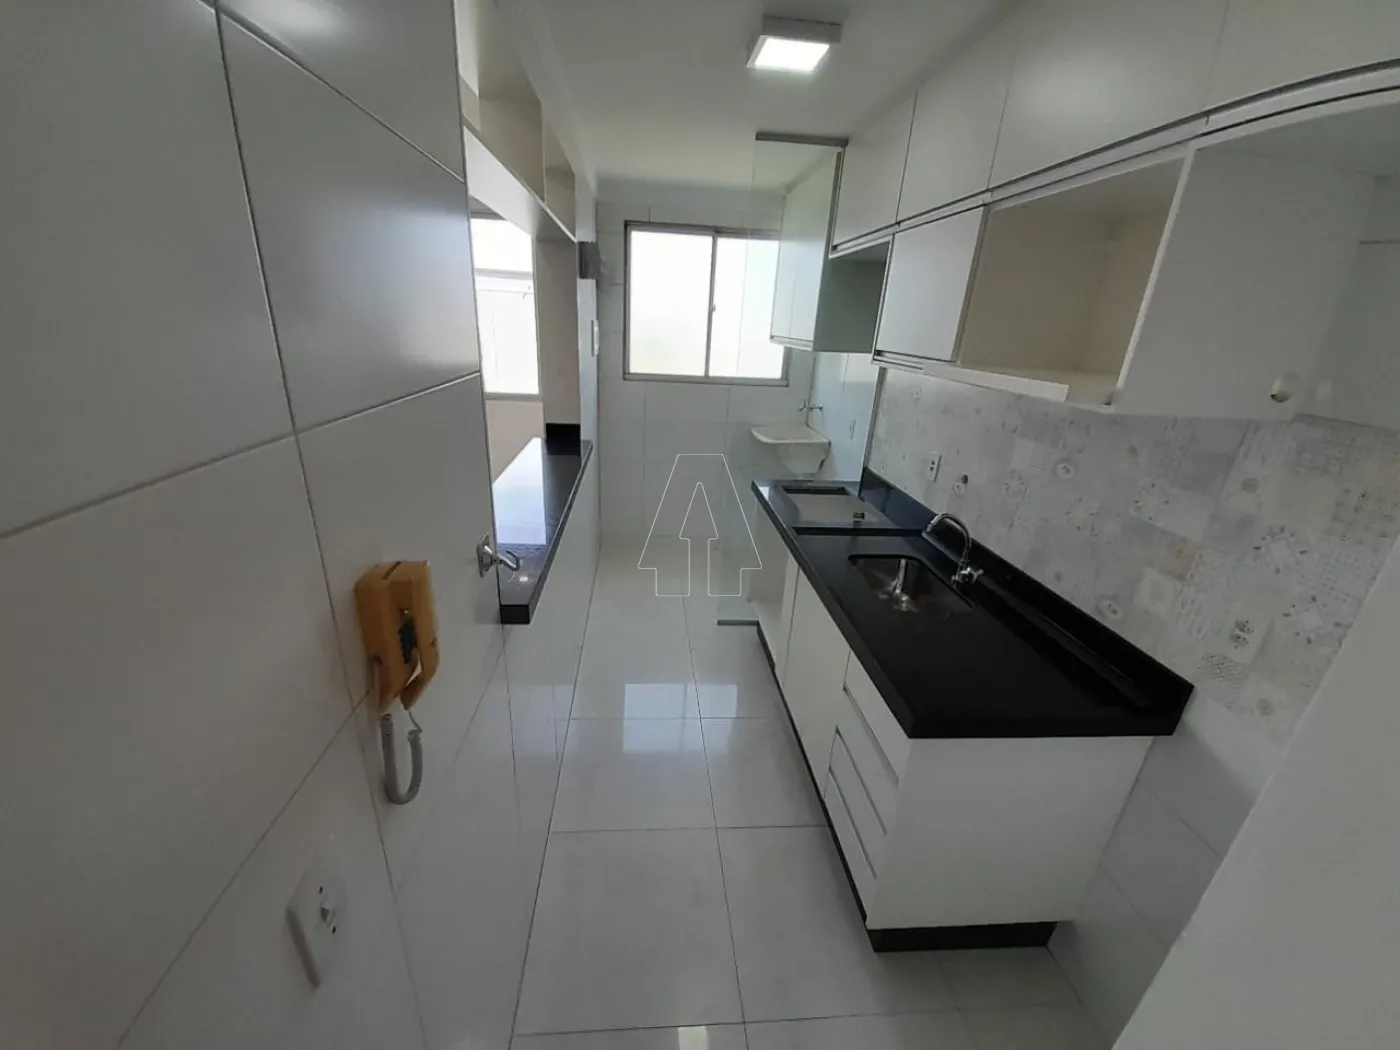 Alugar Apartamento / Padrão em Araçatuba R$ 700,00 - Foto 5